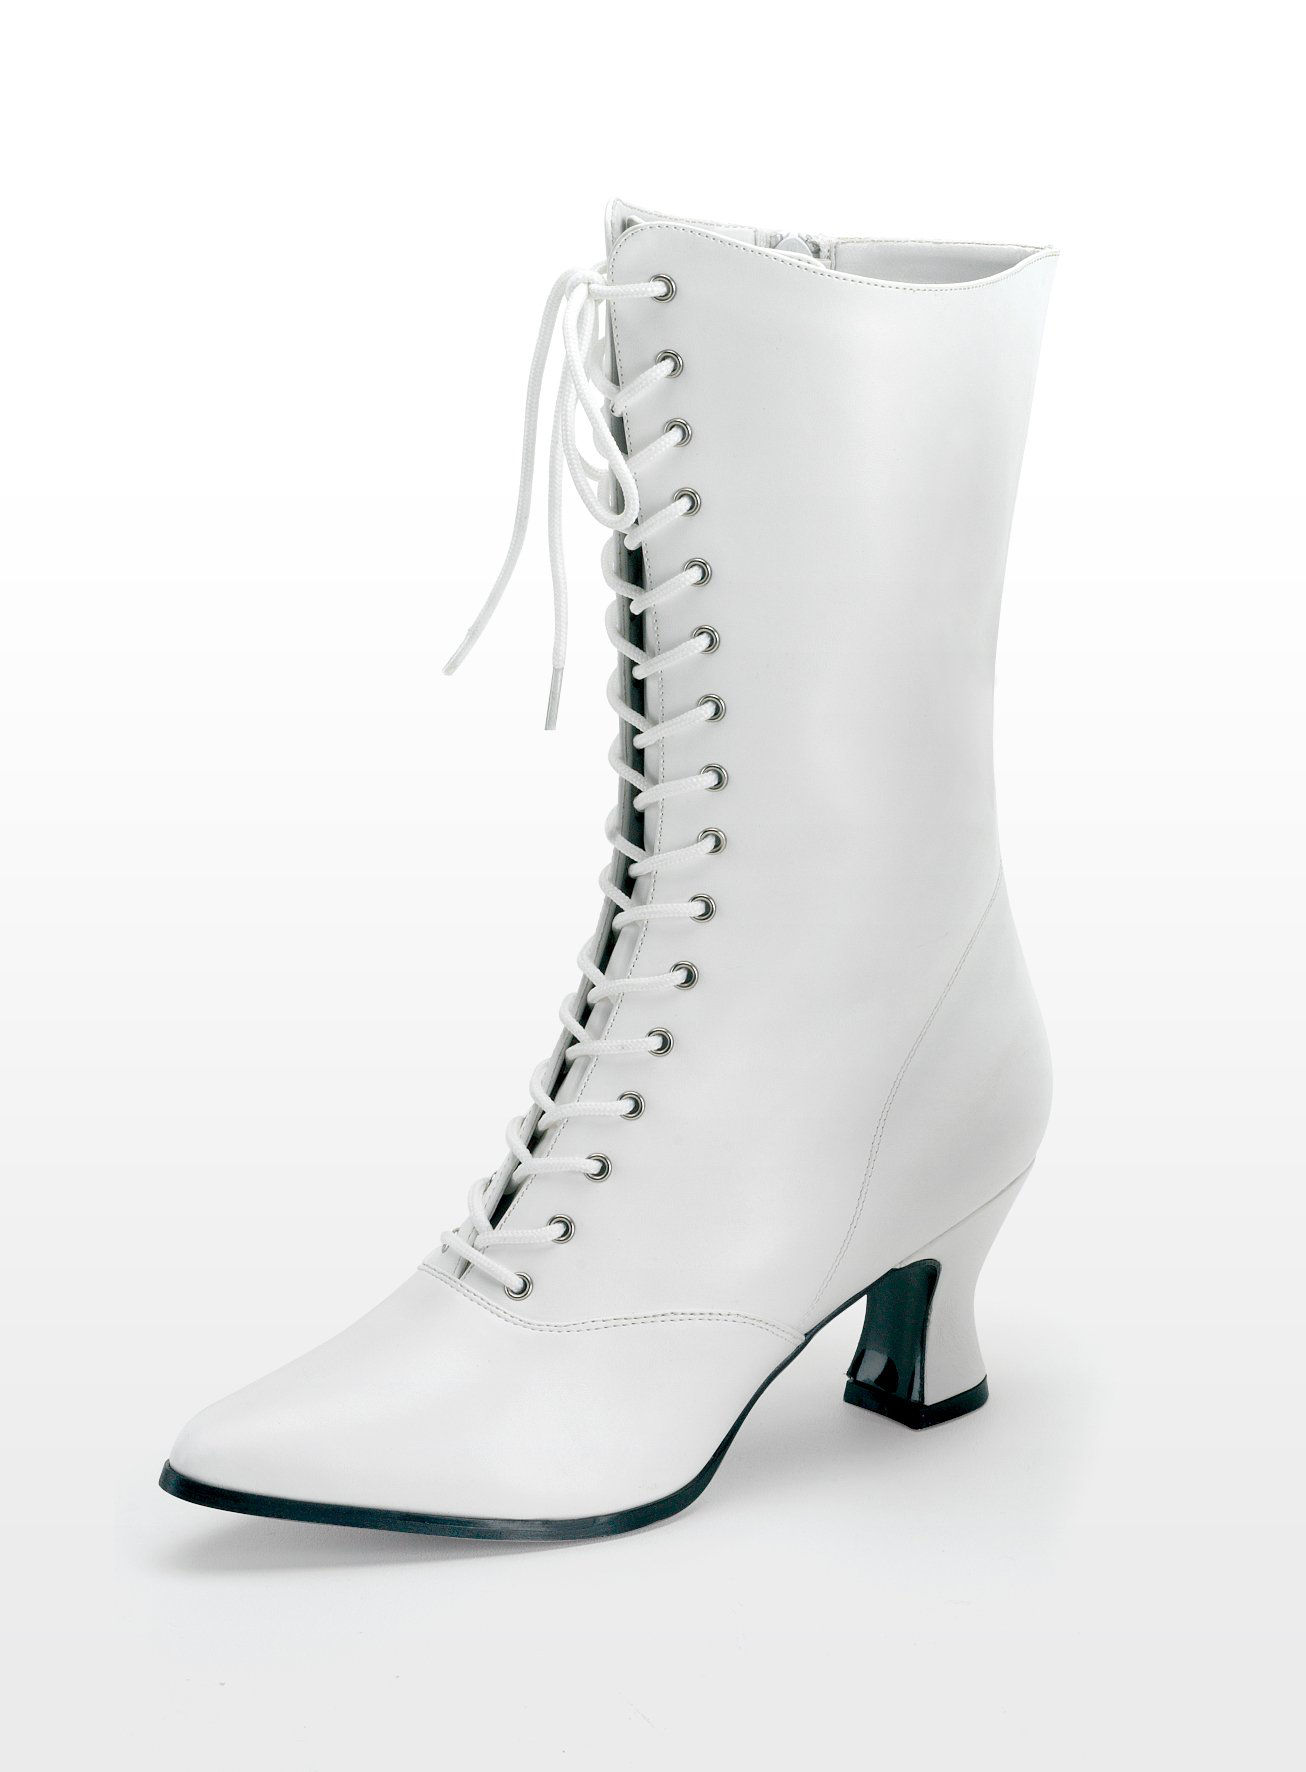 Weil's so schön war: 107245-classic-half-boots-white-klassische-stiefeletten-weiss?$thumbnew$